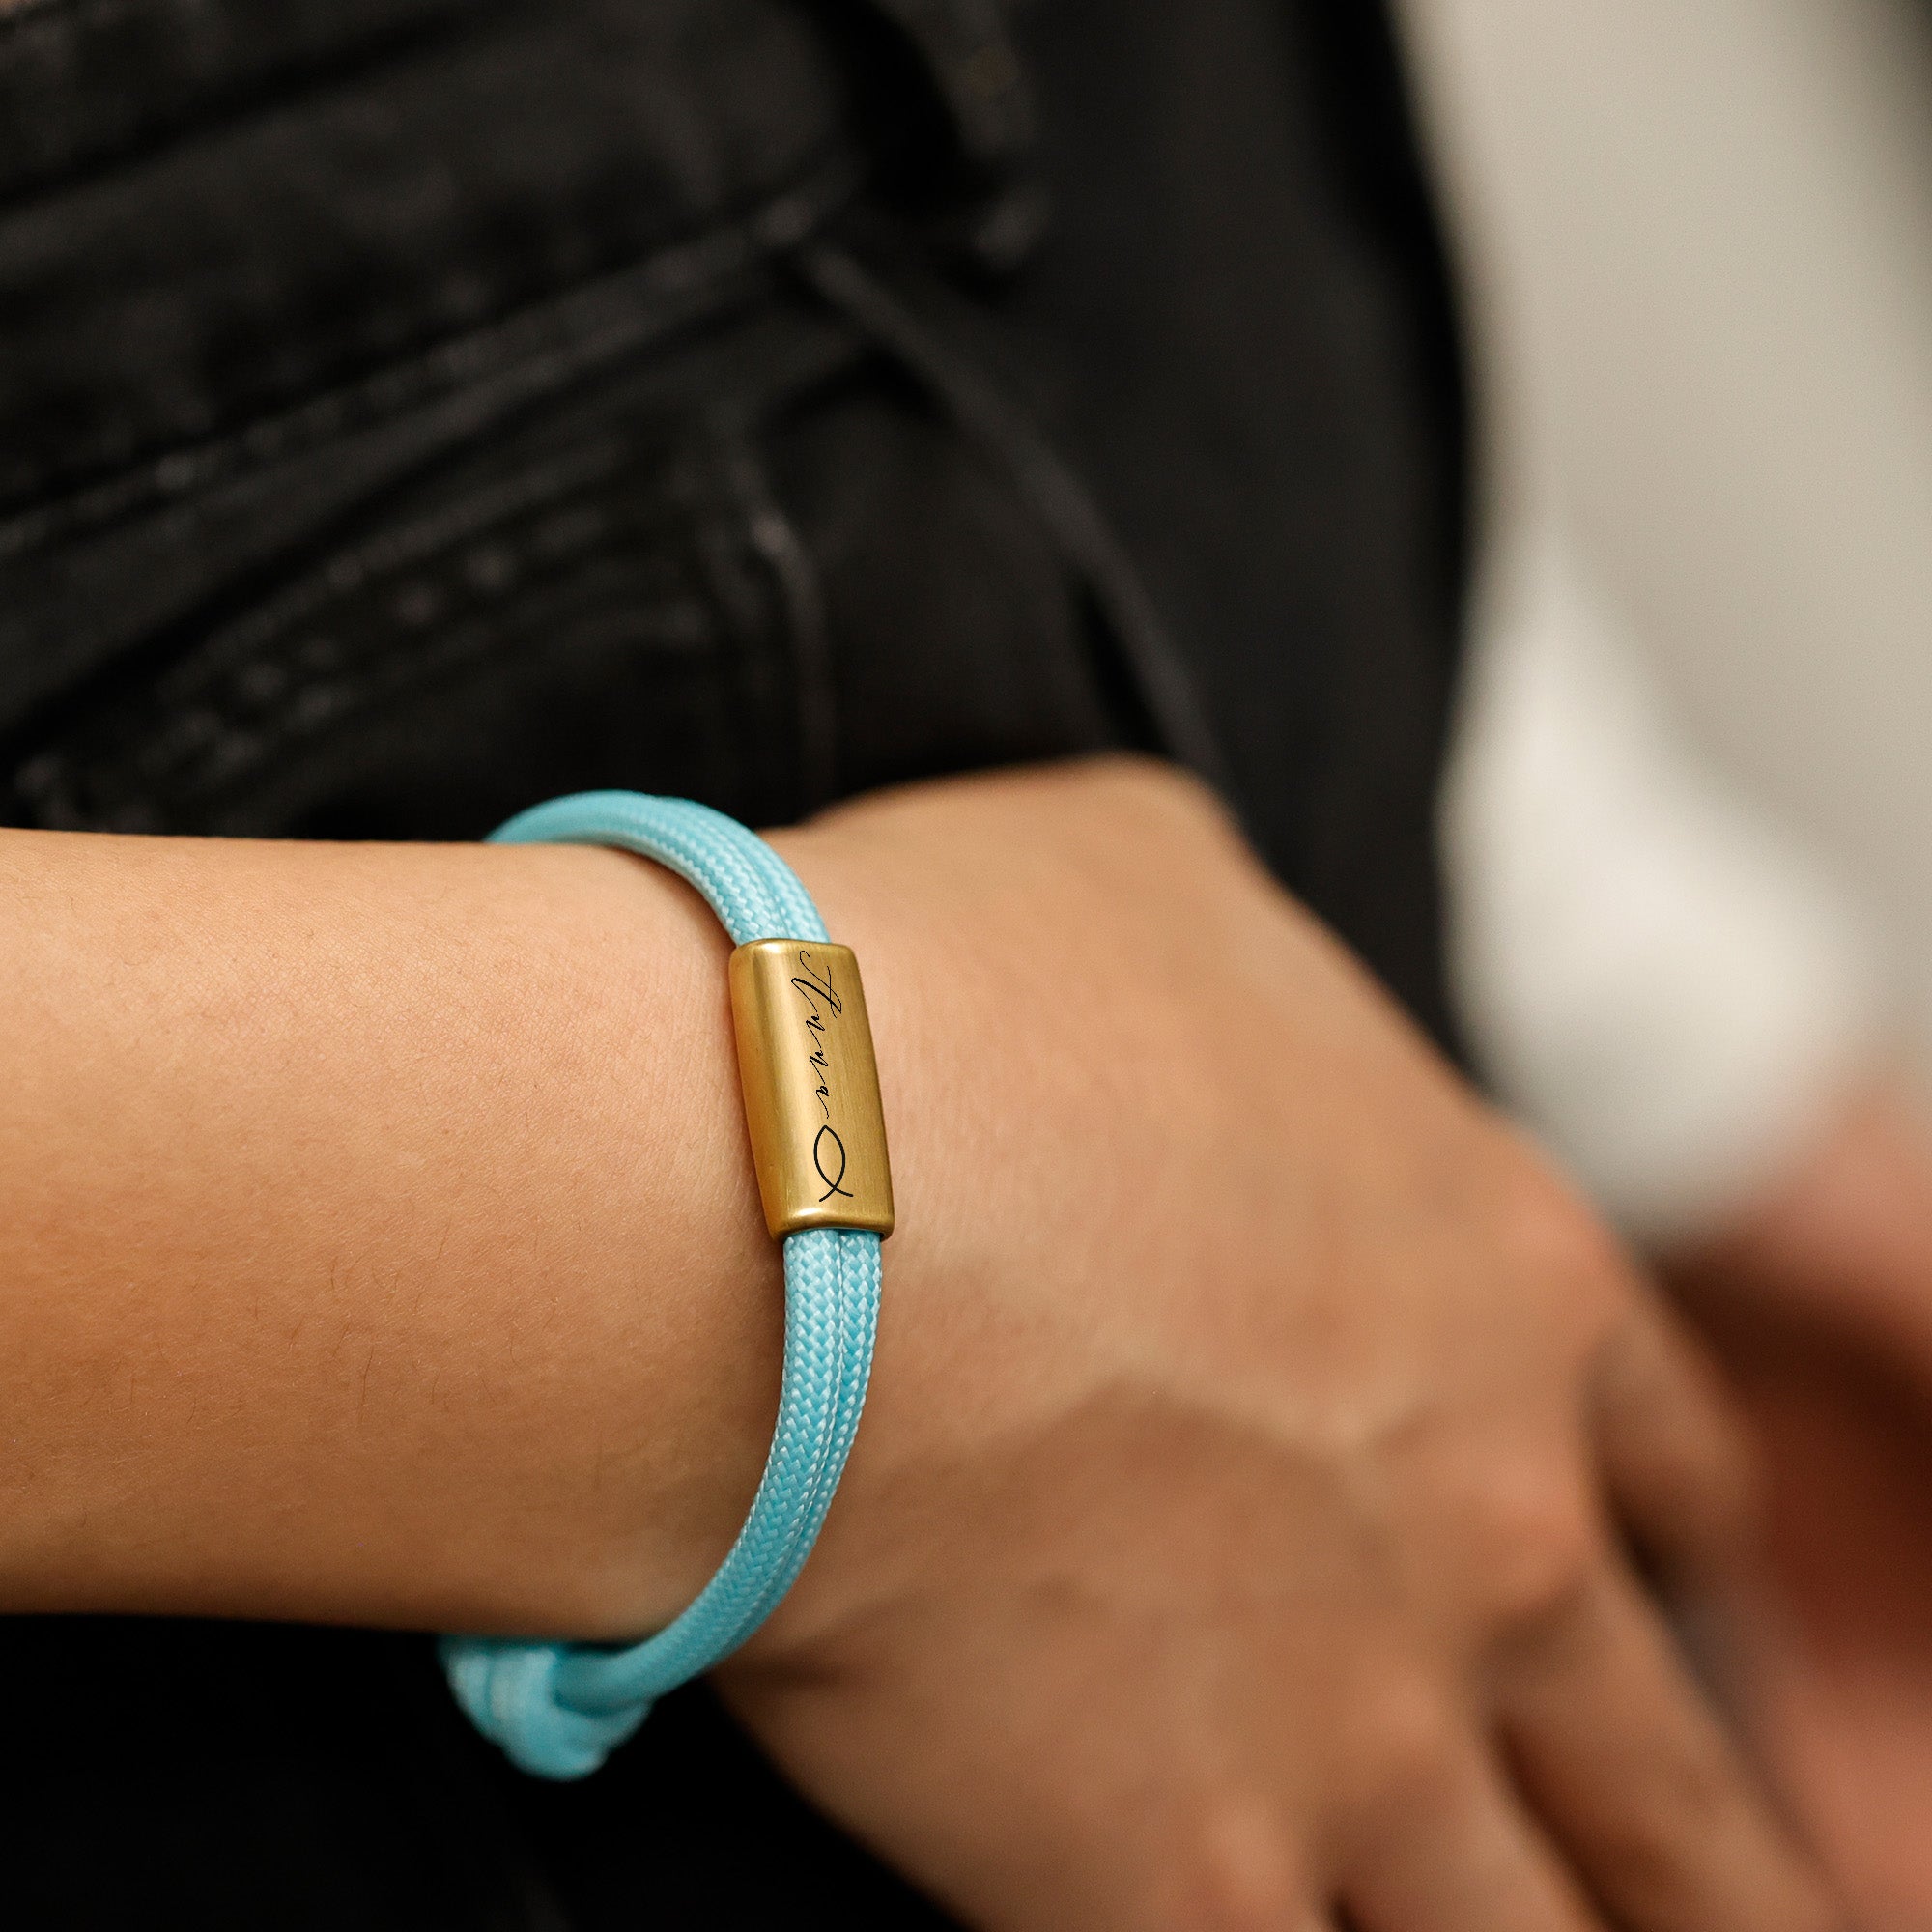 Personalisiertes Armband - Armband Farbenfroh - Armband mit Namen - Kommunionsgeschenk - Firmung Geschenk - Konfirmationsgeschenk - A214